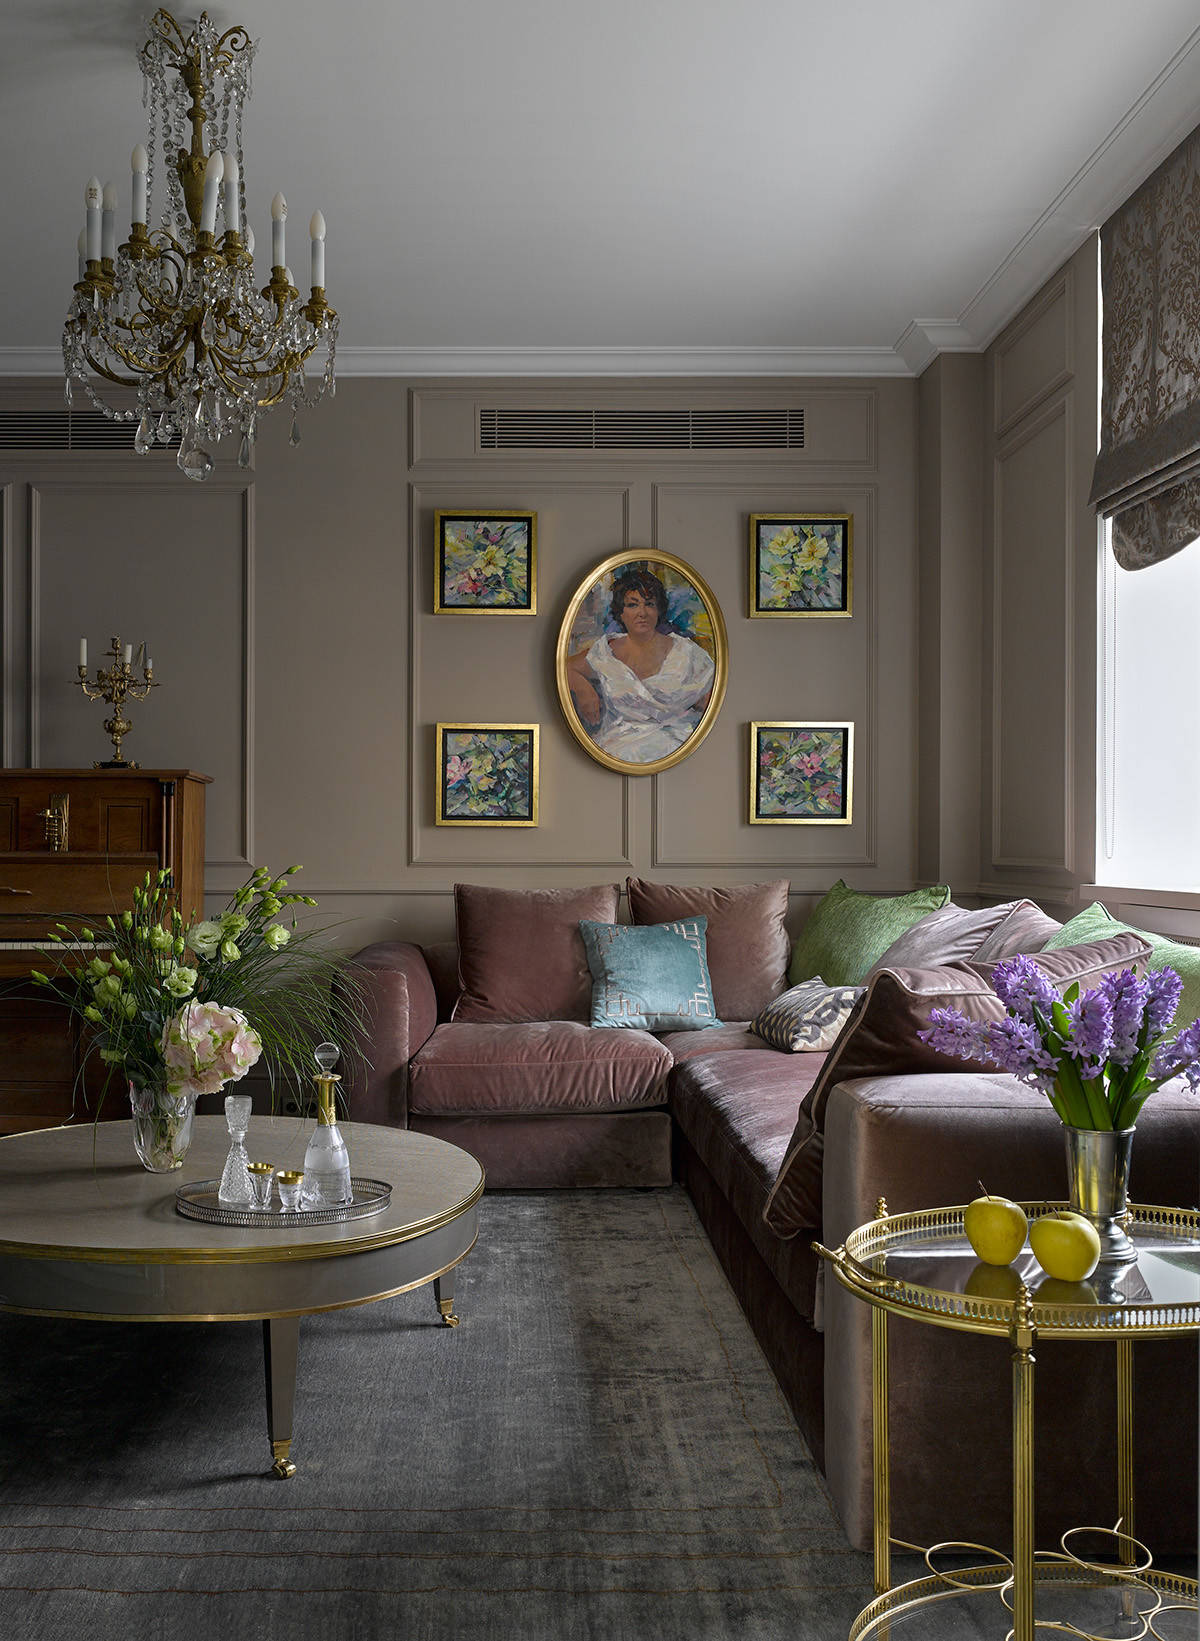 Как выбрать цвет дивана: какой цвет дивана подойдет к разным обоям, шторами стилям интерьера